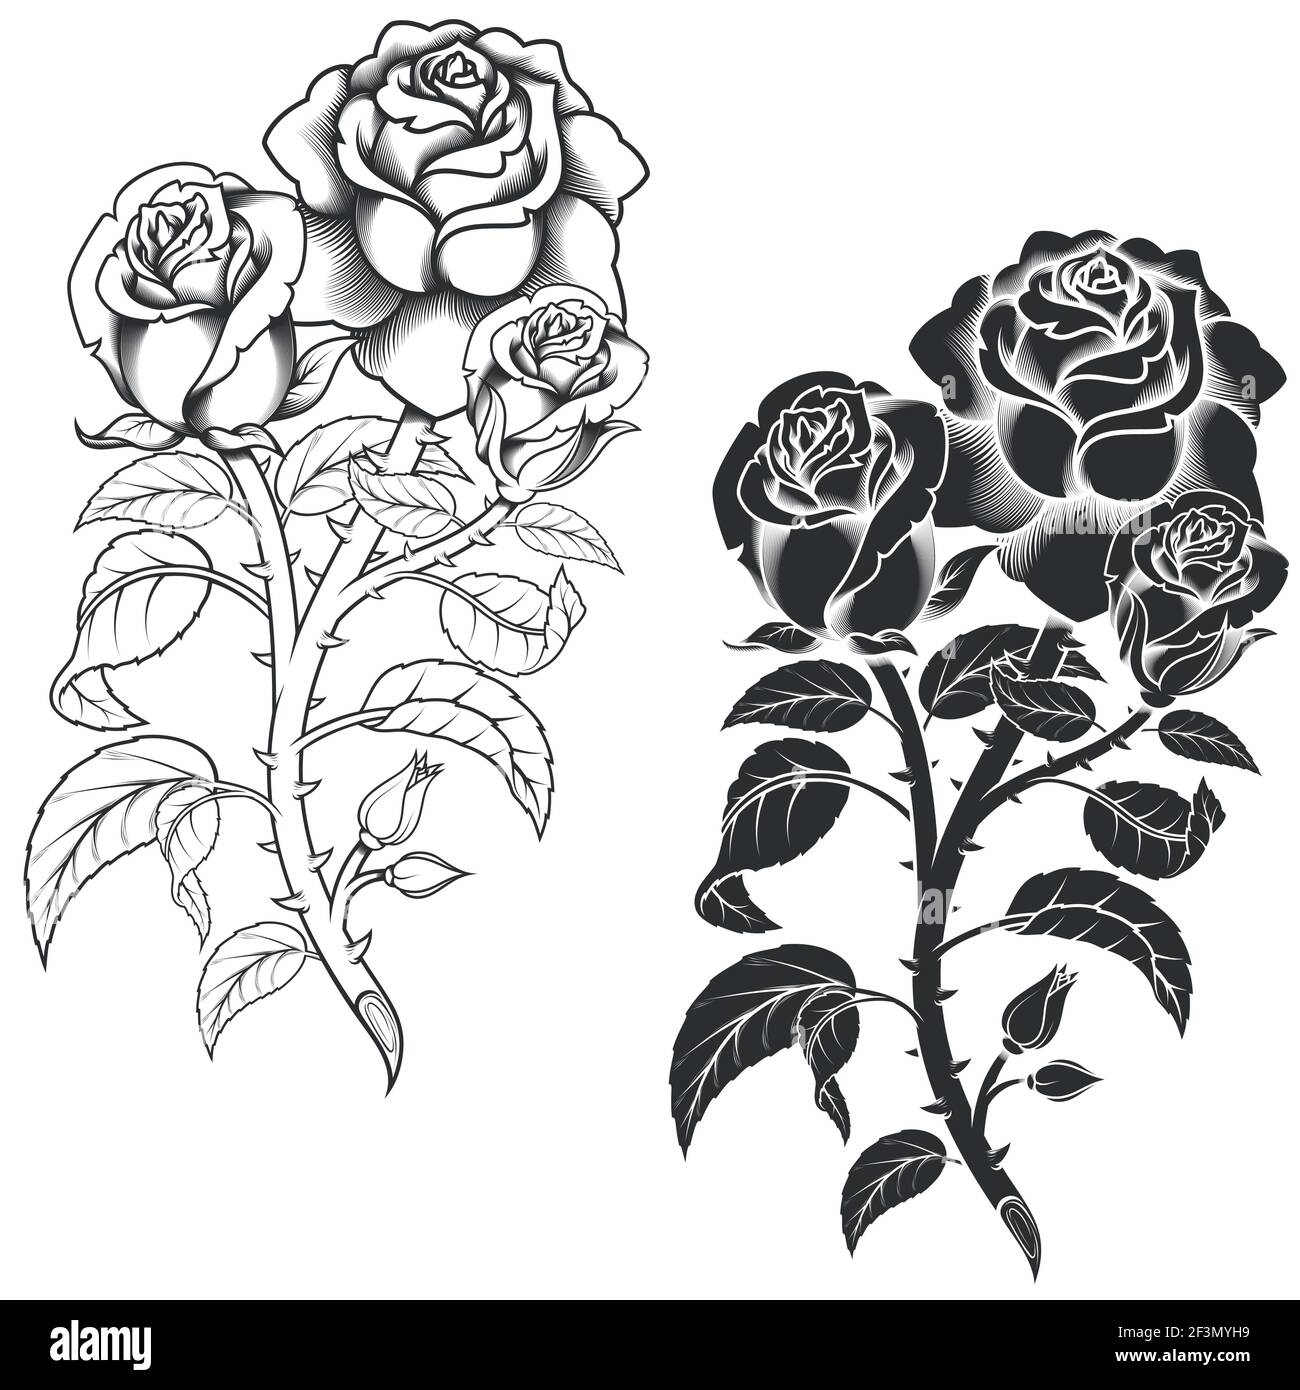 Dessin vectoriel d'un bouquet de fleurs, en noir et blanc, le tout sur fond  blanc Image Vectorielle Stock - Alamy